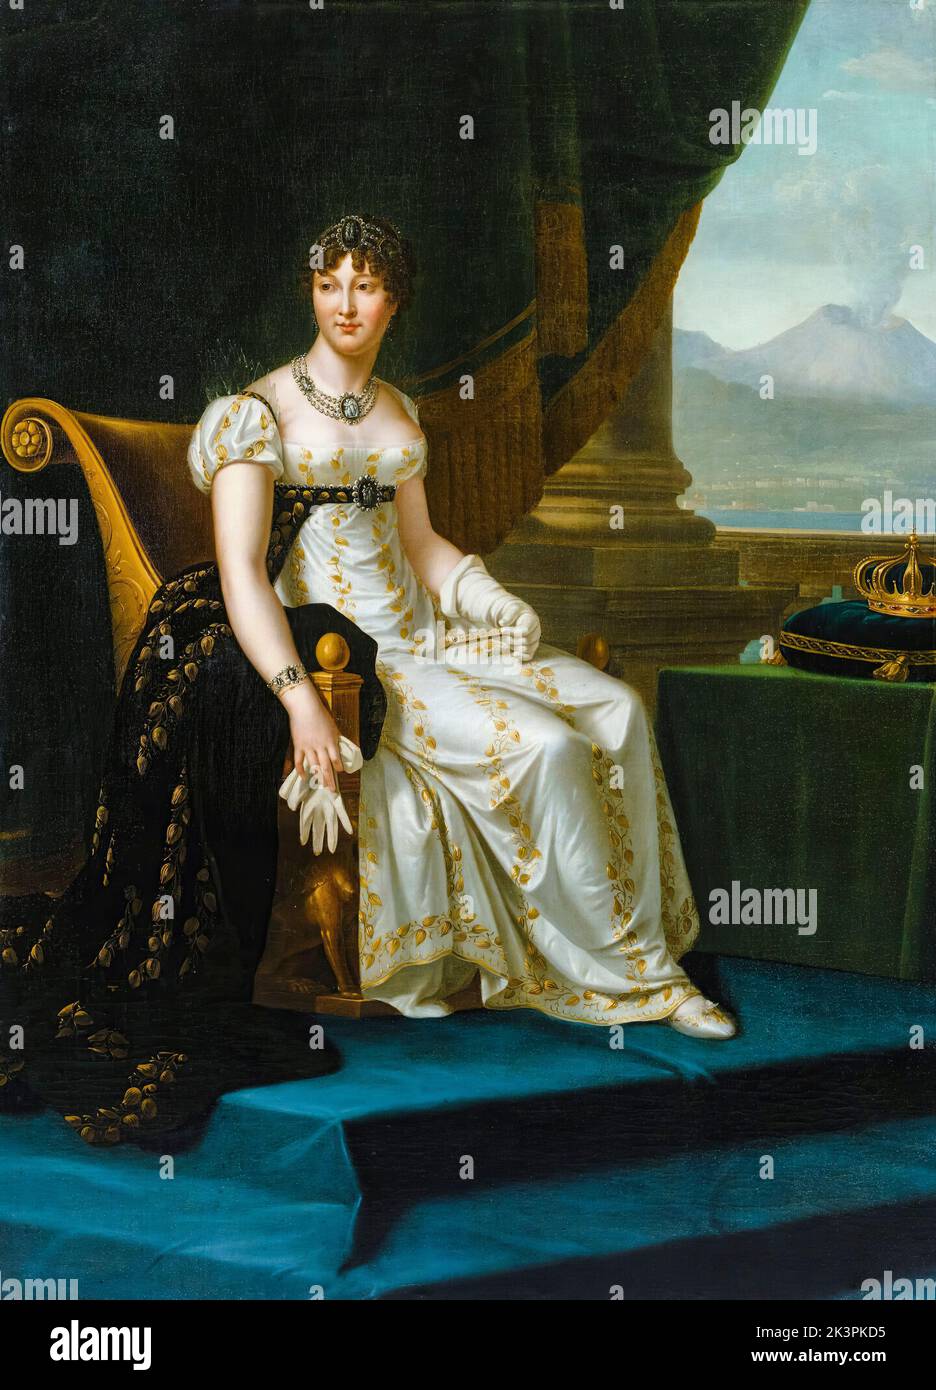 Caroline Bonaparte (Caroline Murat), (1782-1839), Reine Consort de Naples et des deux Siciles, portrait peint à l'huile sur toile par le cercle de François Gérard, 1810-1812 Banque D'Images